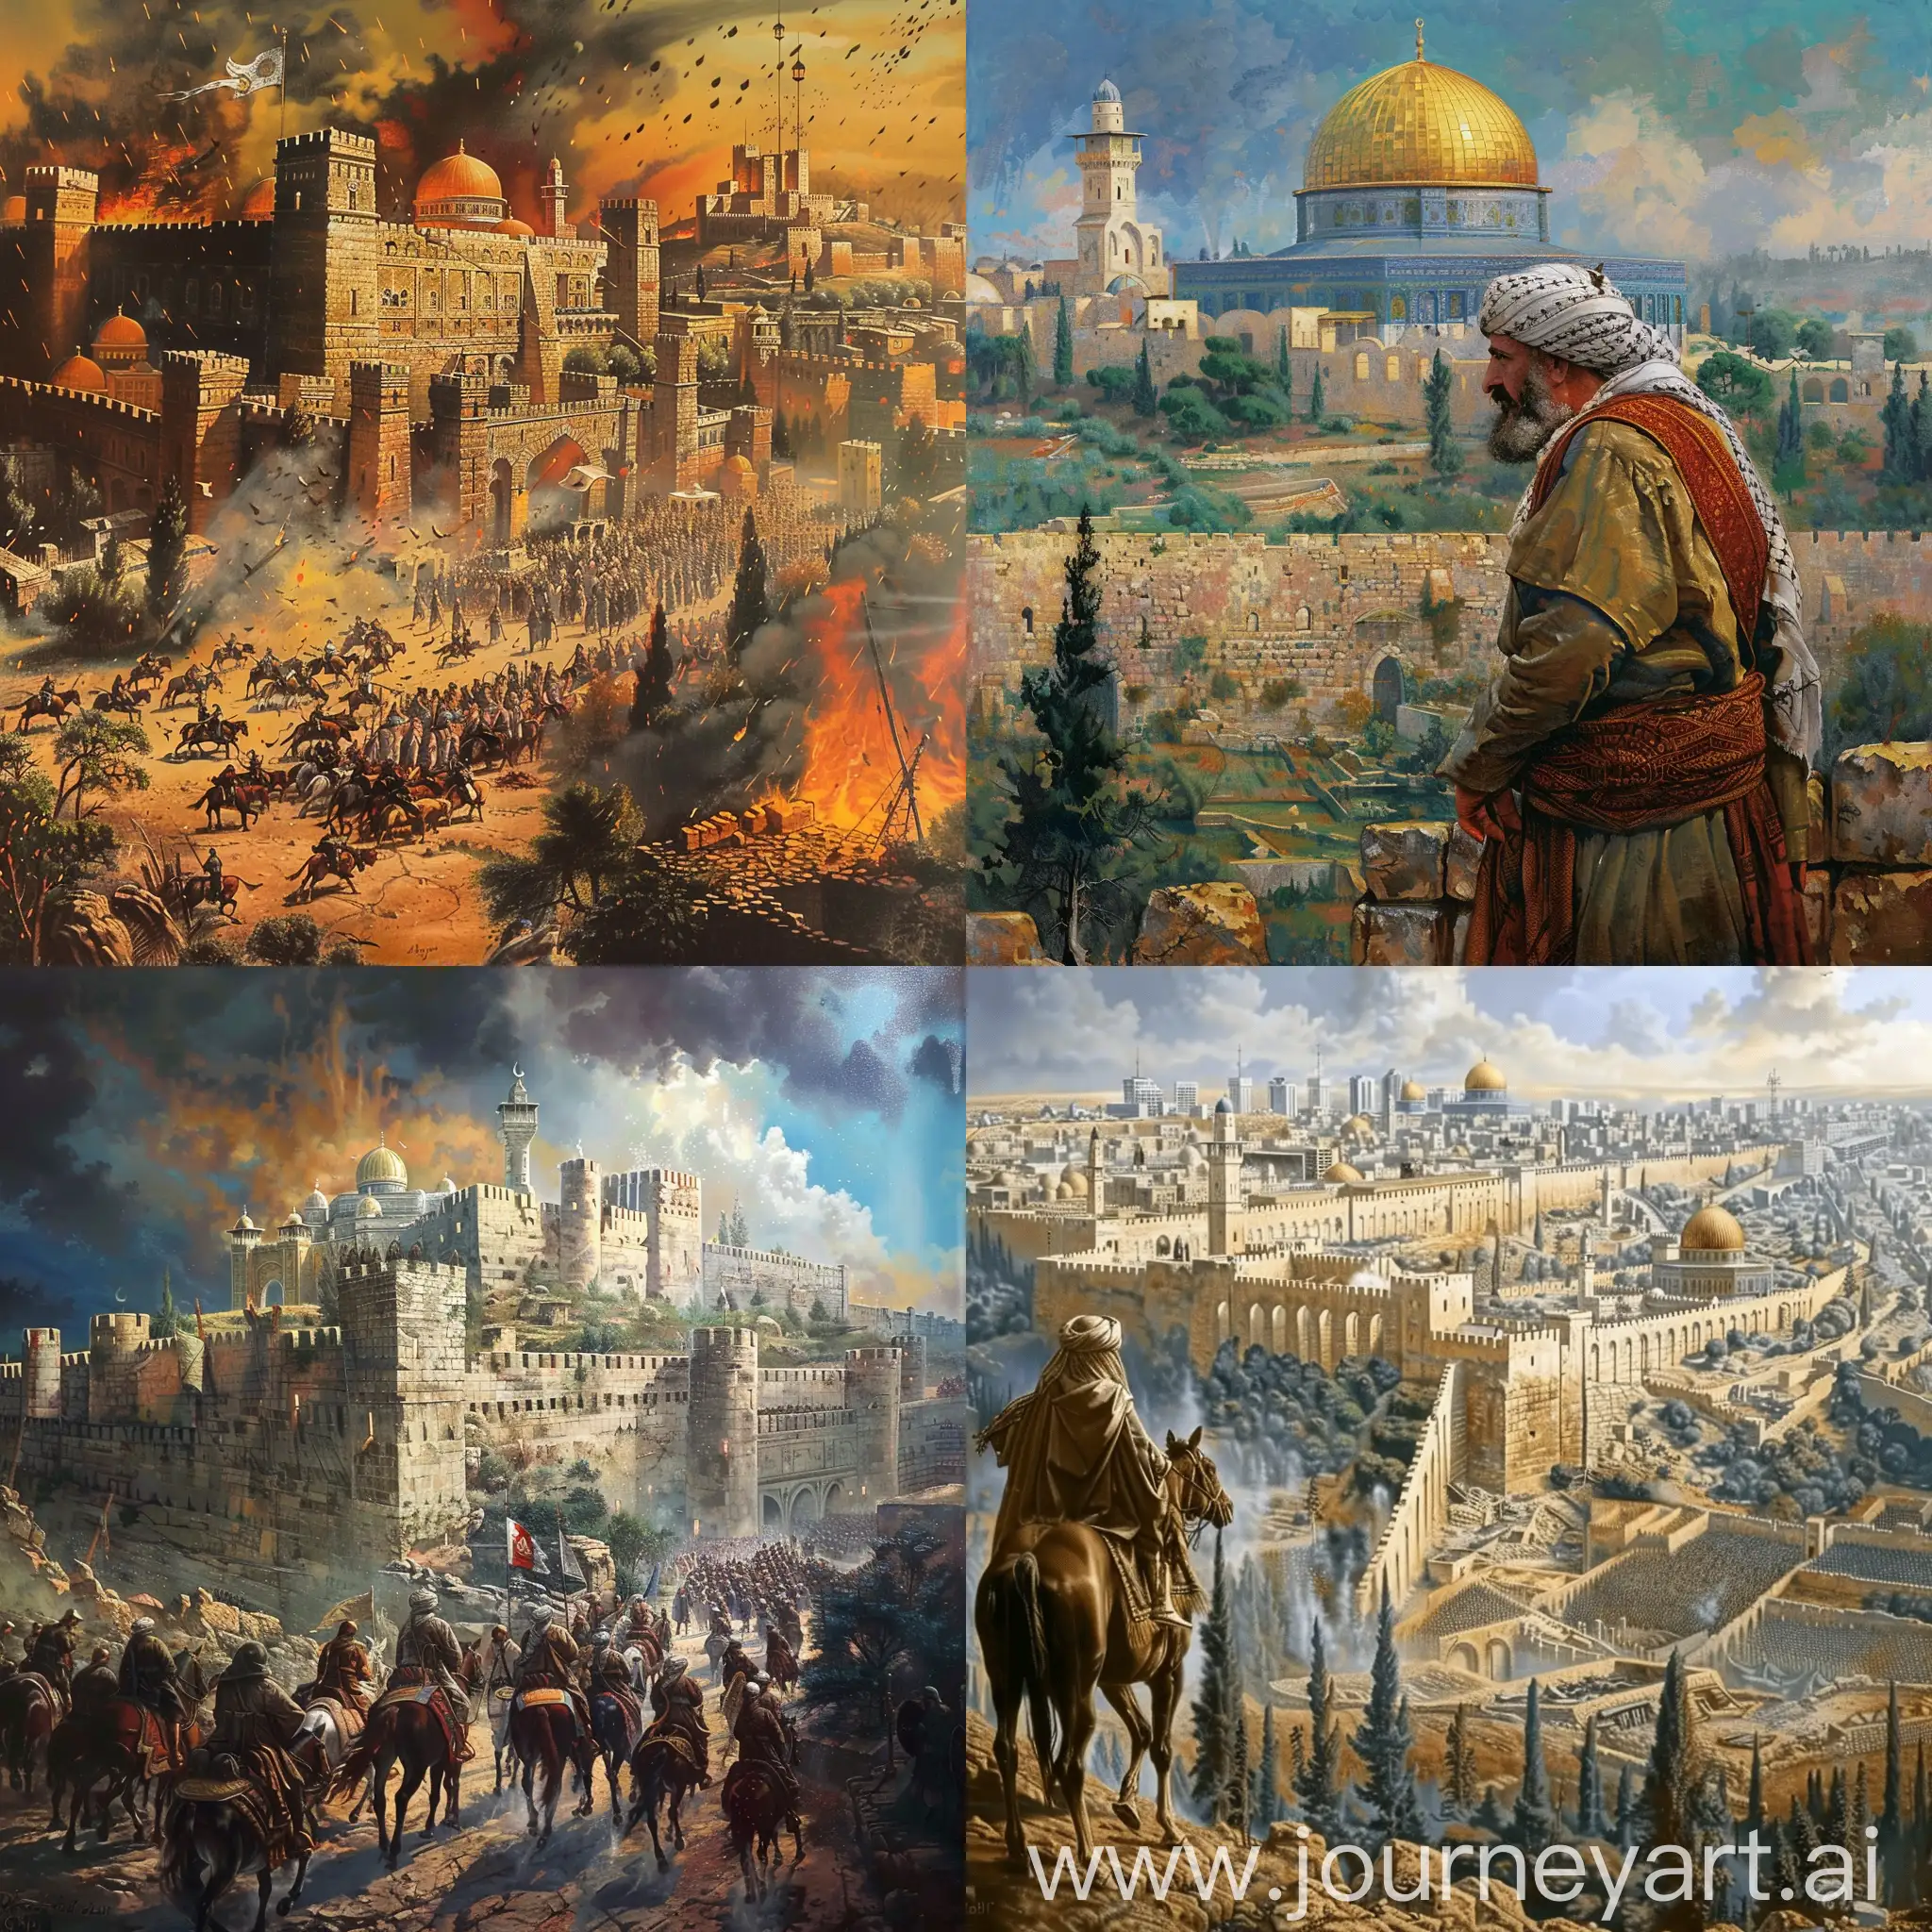 تحرير فلسطين على ايد المهدى المنتظر
وأعاده بناء القدس